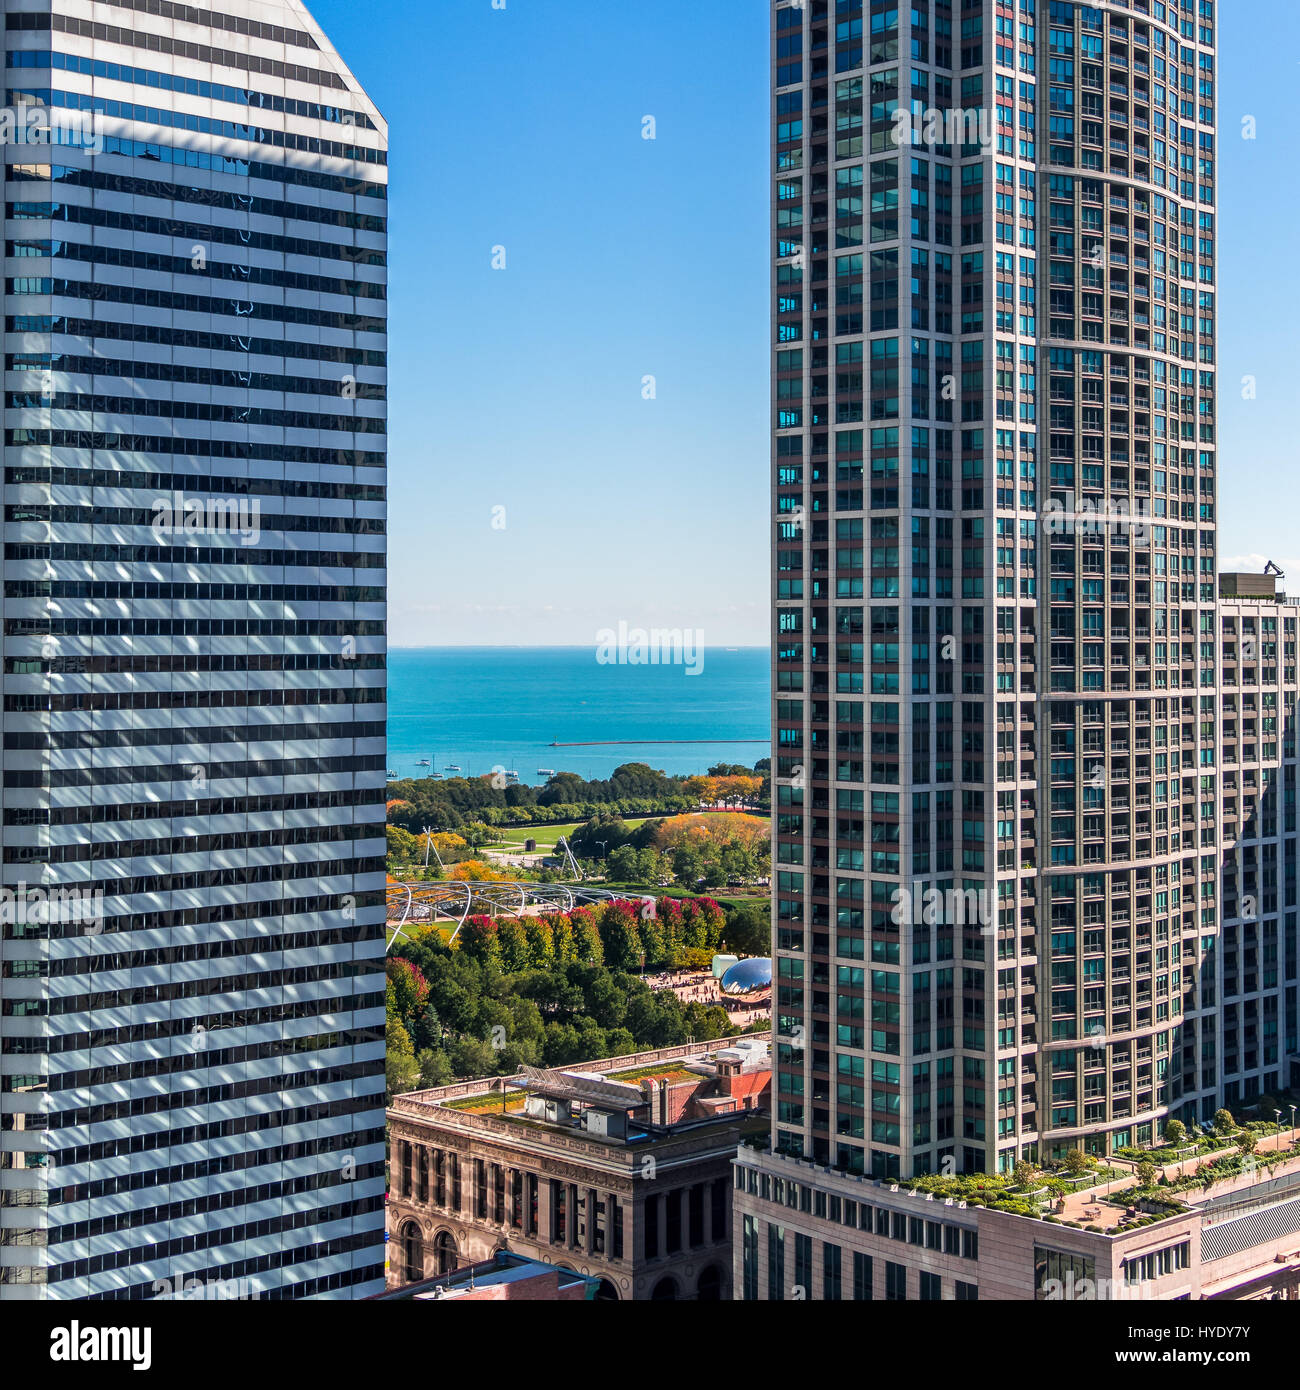 Vista desde el piso 27, sala de estar cubierta en el Hotel Witt, Chicago. Mire cuidadosamente y usted puede ver Cloud Gate con el reflejo de la ciudad. Foto de stock